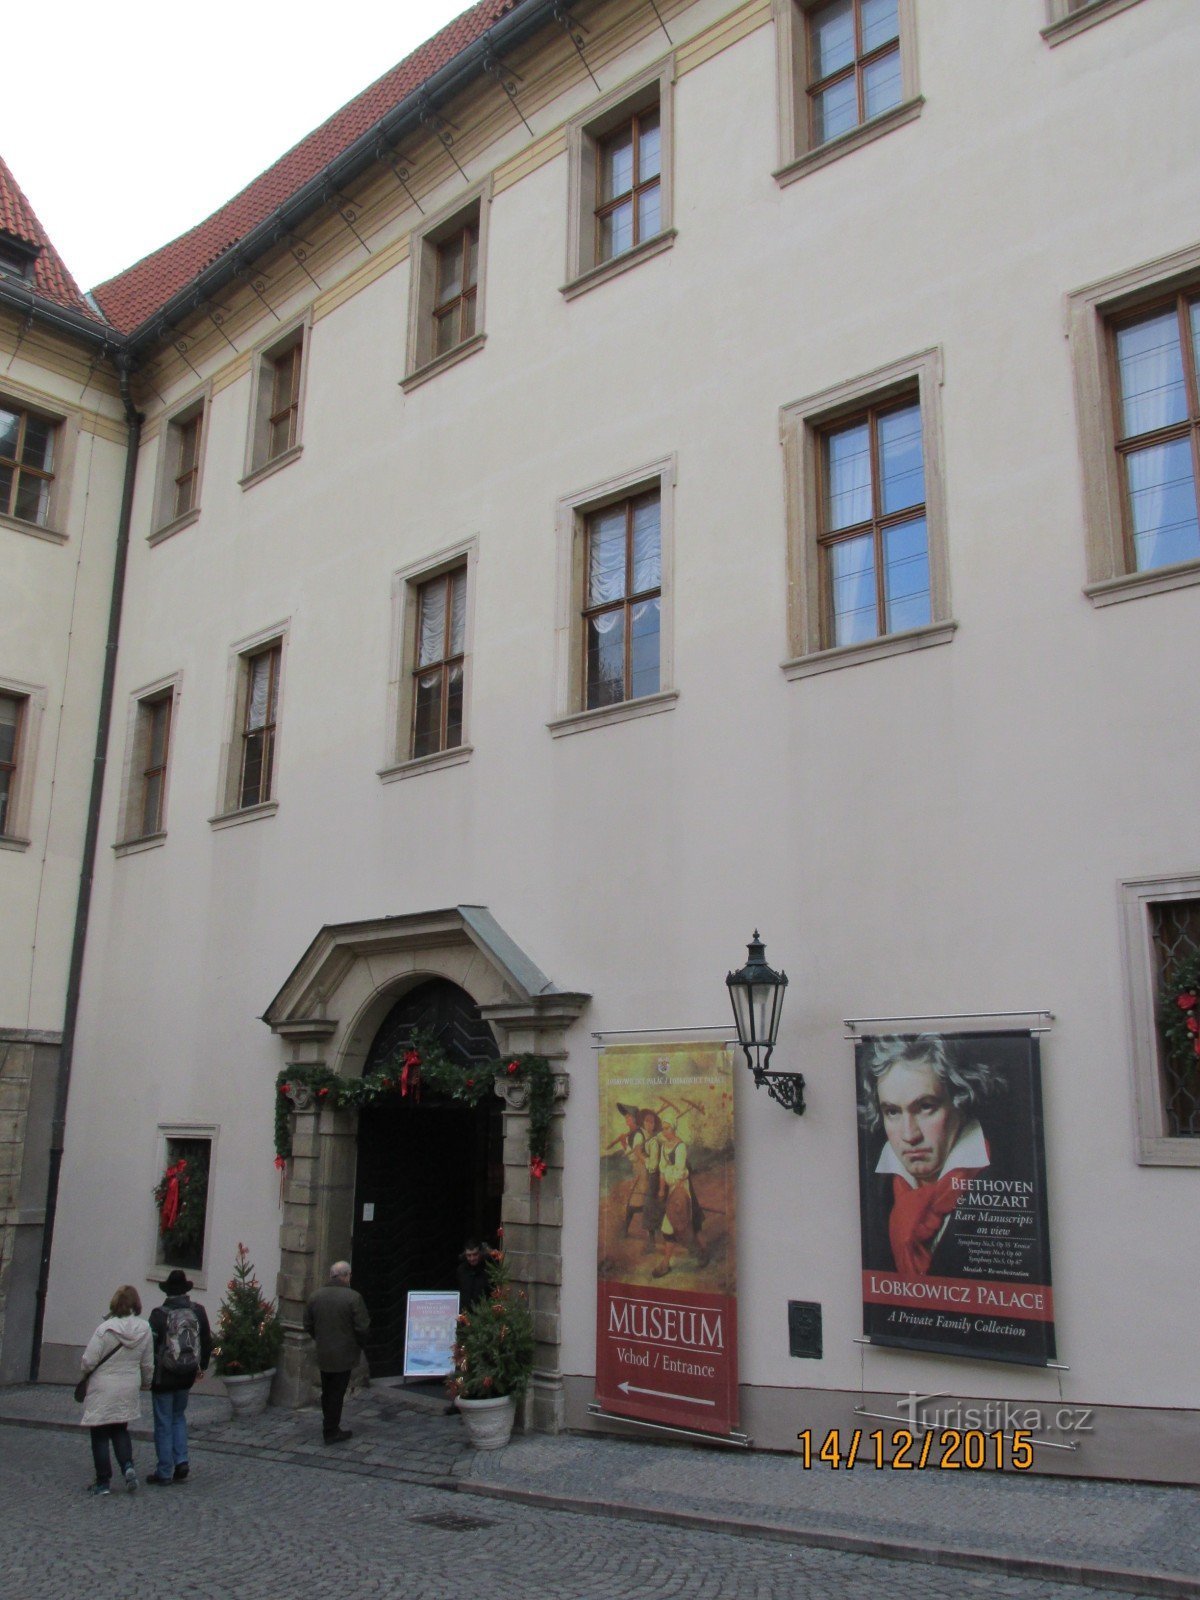 ロブコヴィツ宮殿の博物館